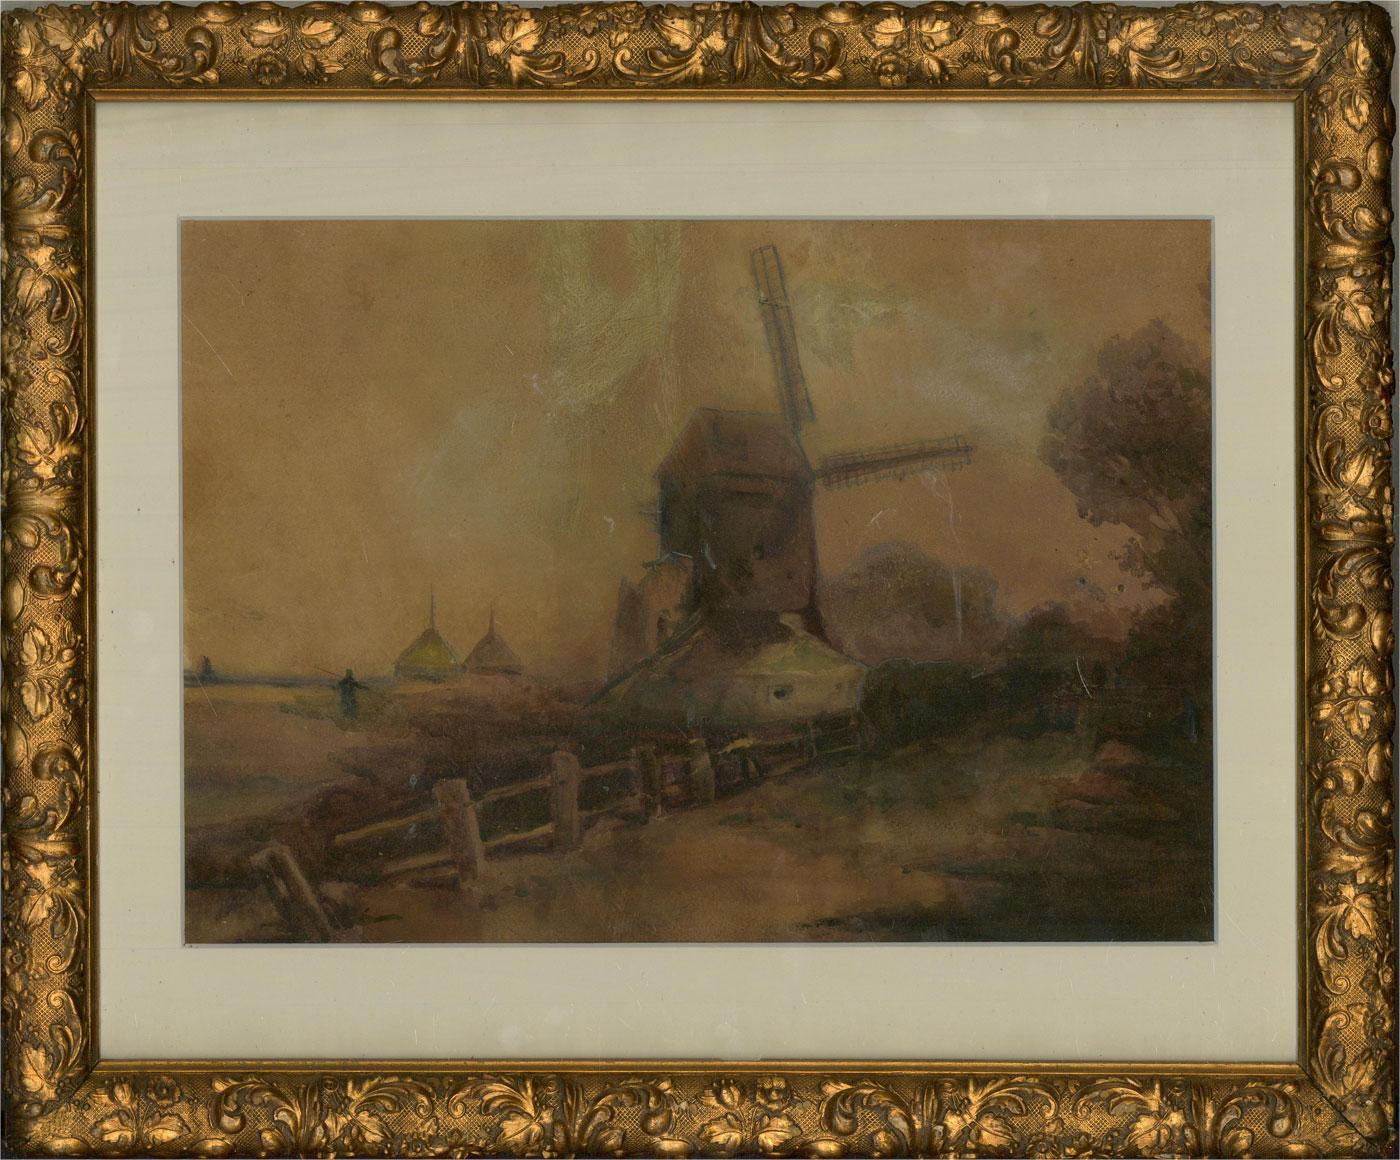 Ein atmosphärisches und stimmungsvolles Aquarell, das eine Standermolen (holländische Windmühle) in einer dunklen, düsteren Landschaft zeigt. Das Gemälde ist unsigniert und befindet sich in einem hübschen Rahmen aus der Zeit der Jahrhundertwende,